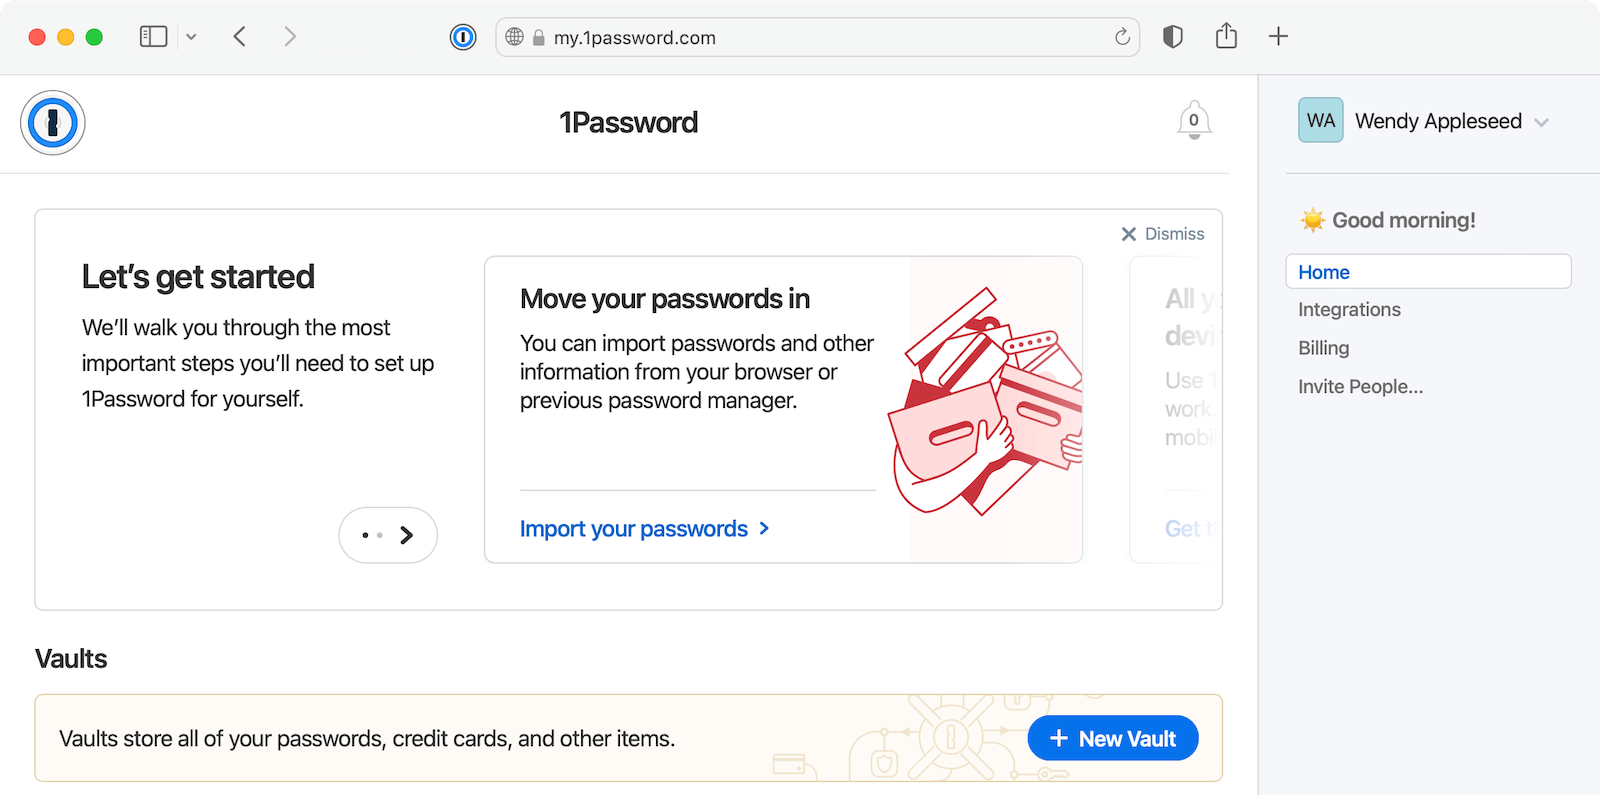 La page d'accueil sur 1Password.com